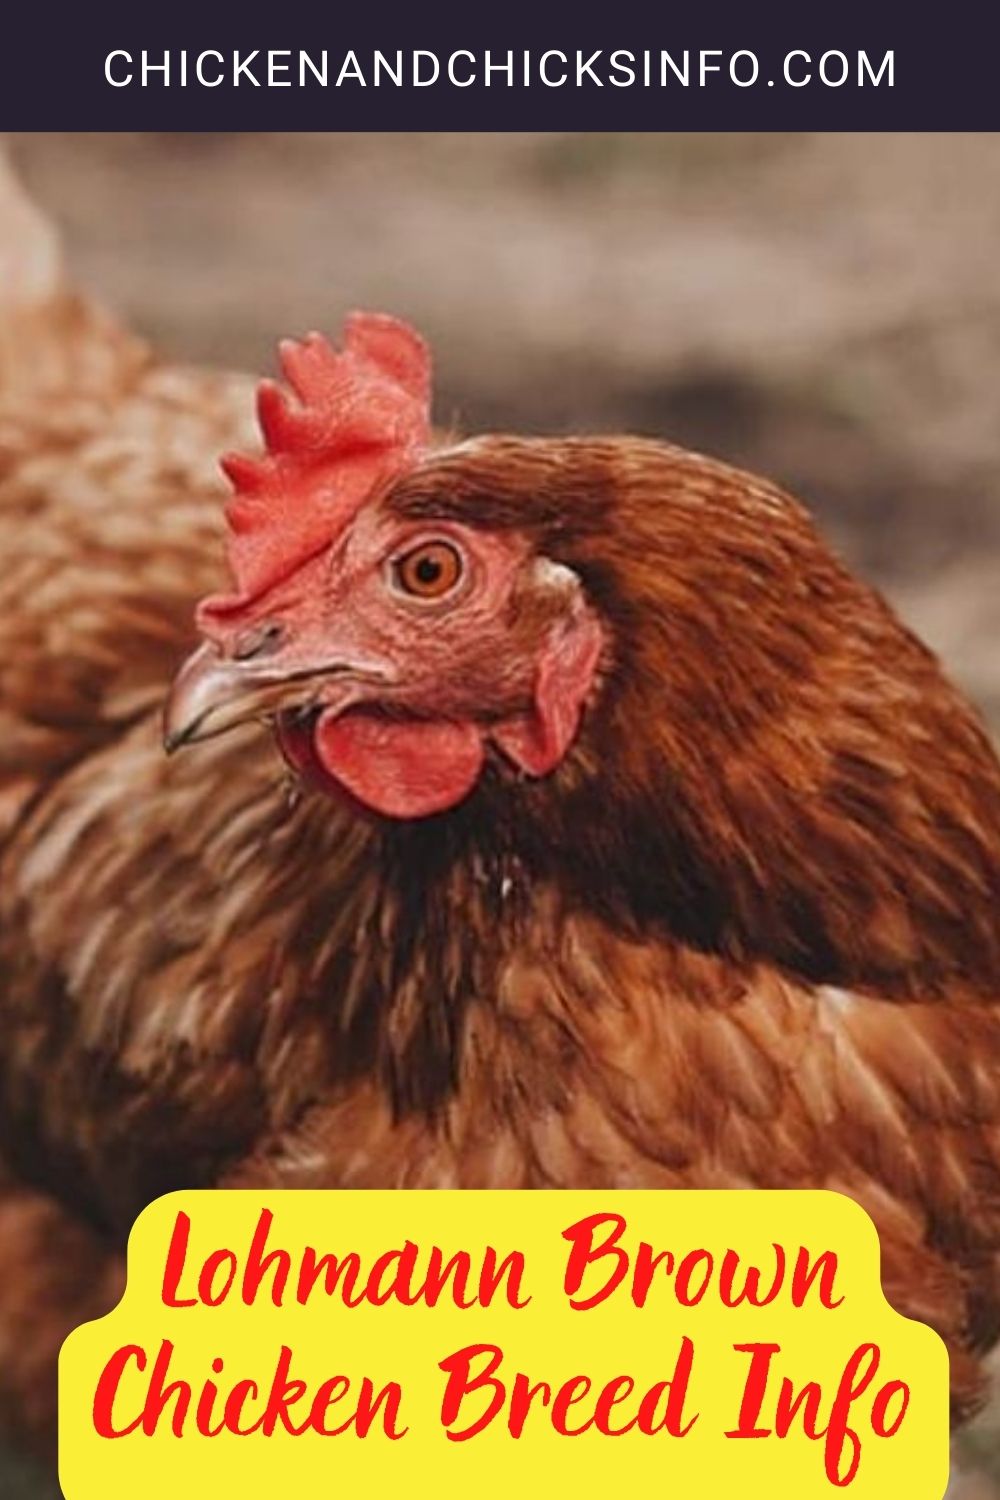 Lohmann Brown Chicken Breed Info pinterest image.